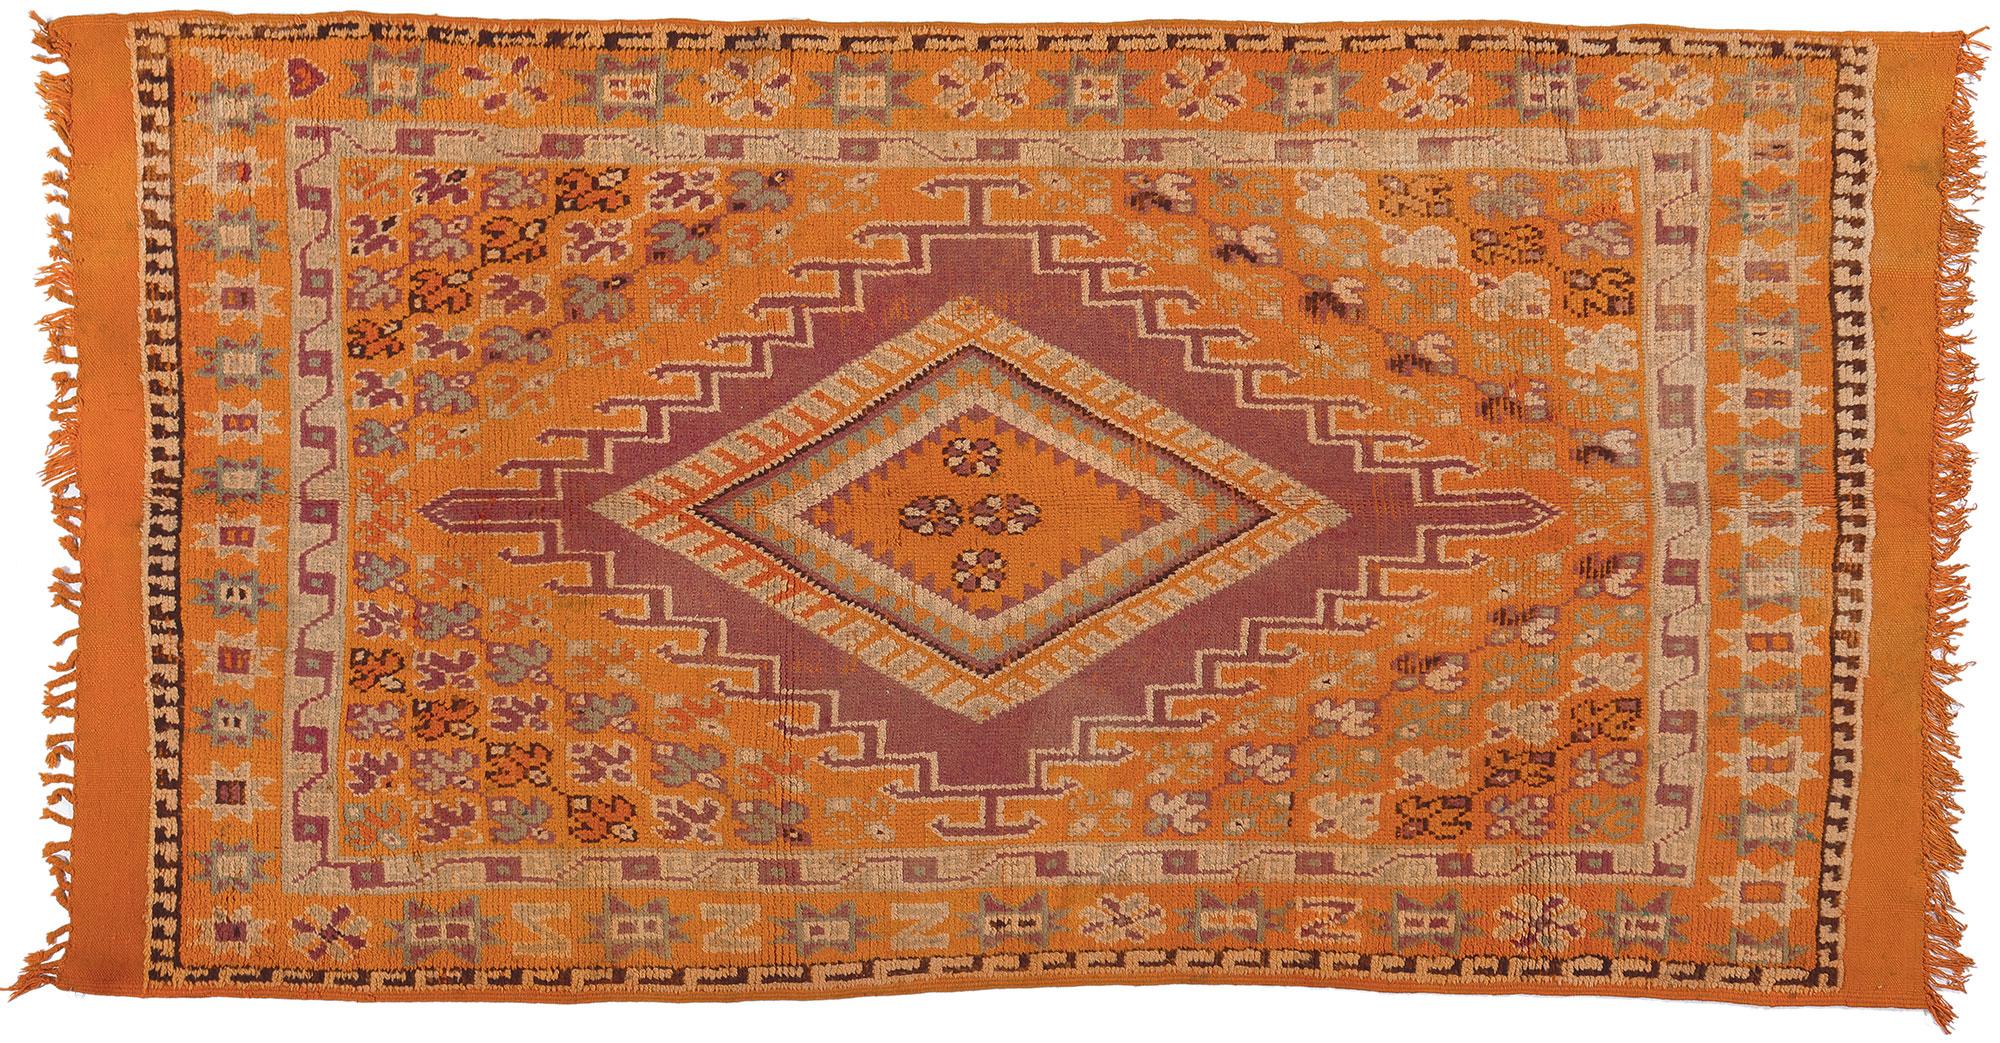 Tapis marocain orange, enchantement tribal rencontre le style bohème audacieux en vente 2